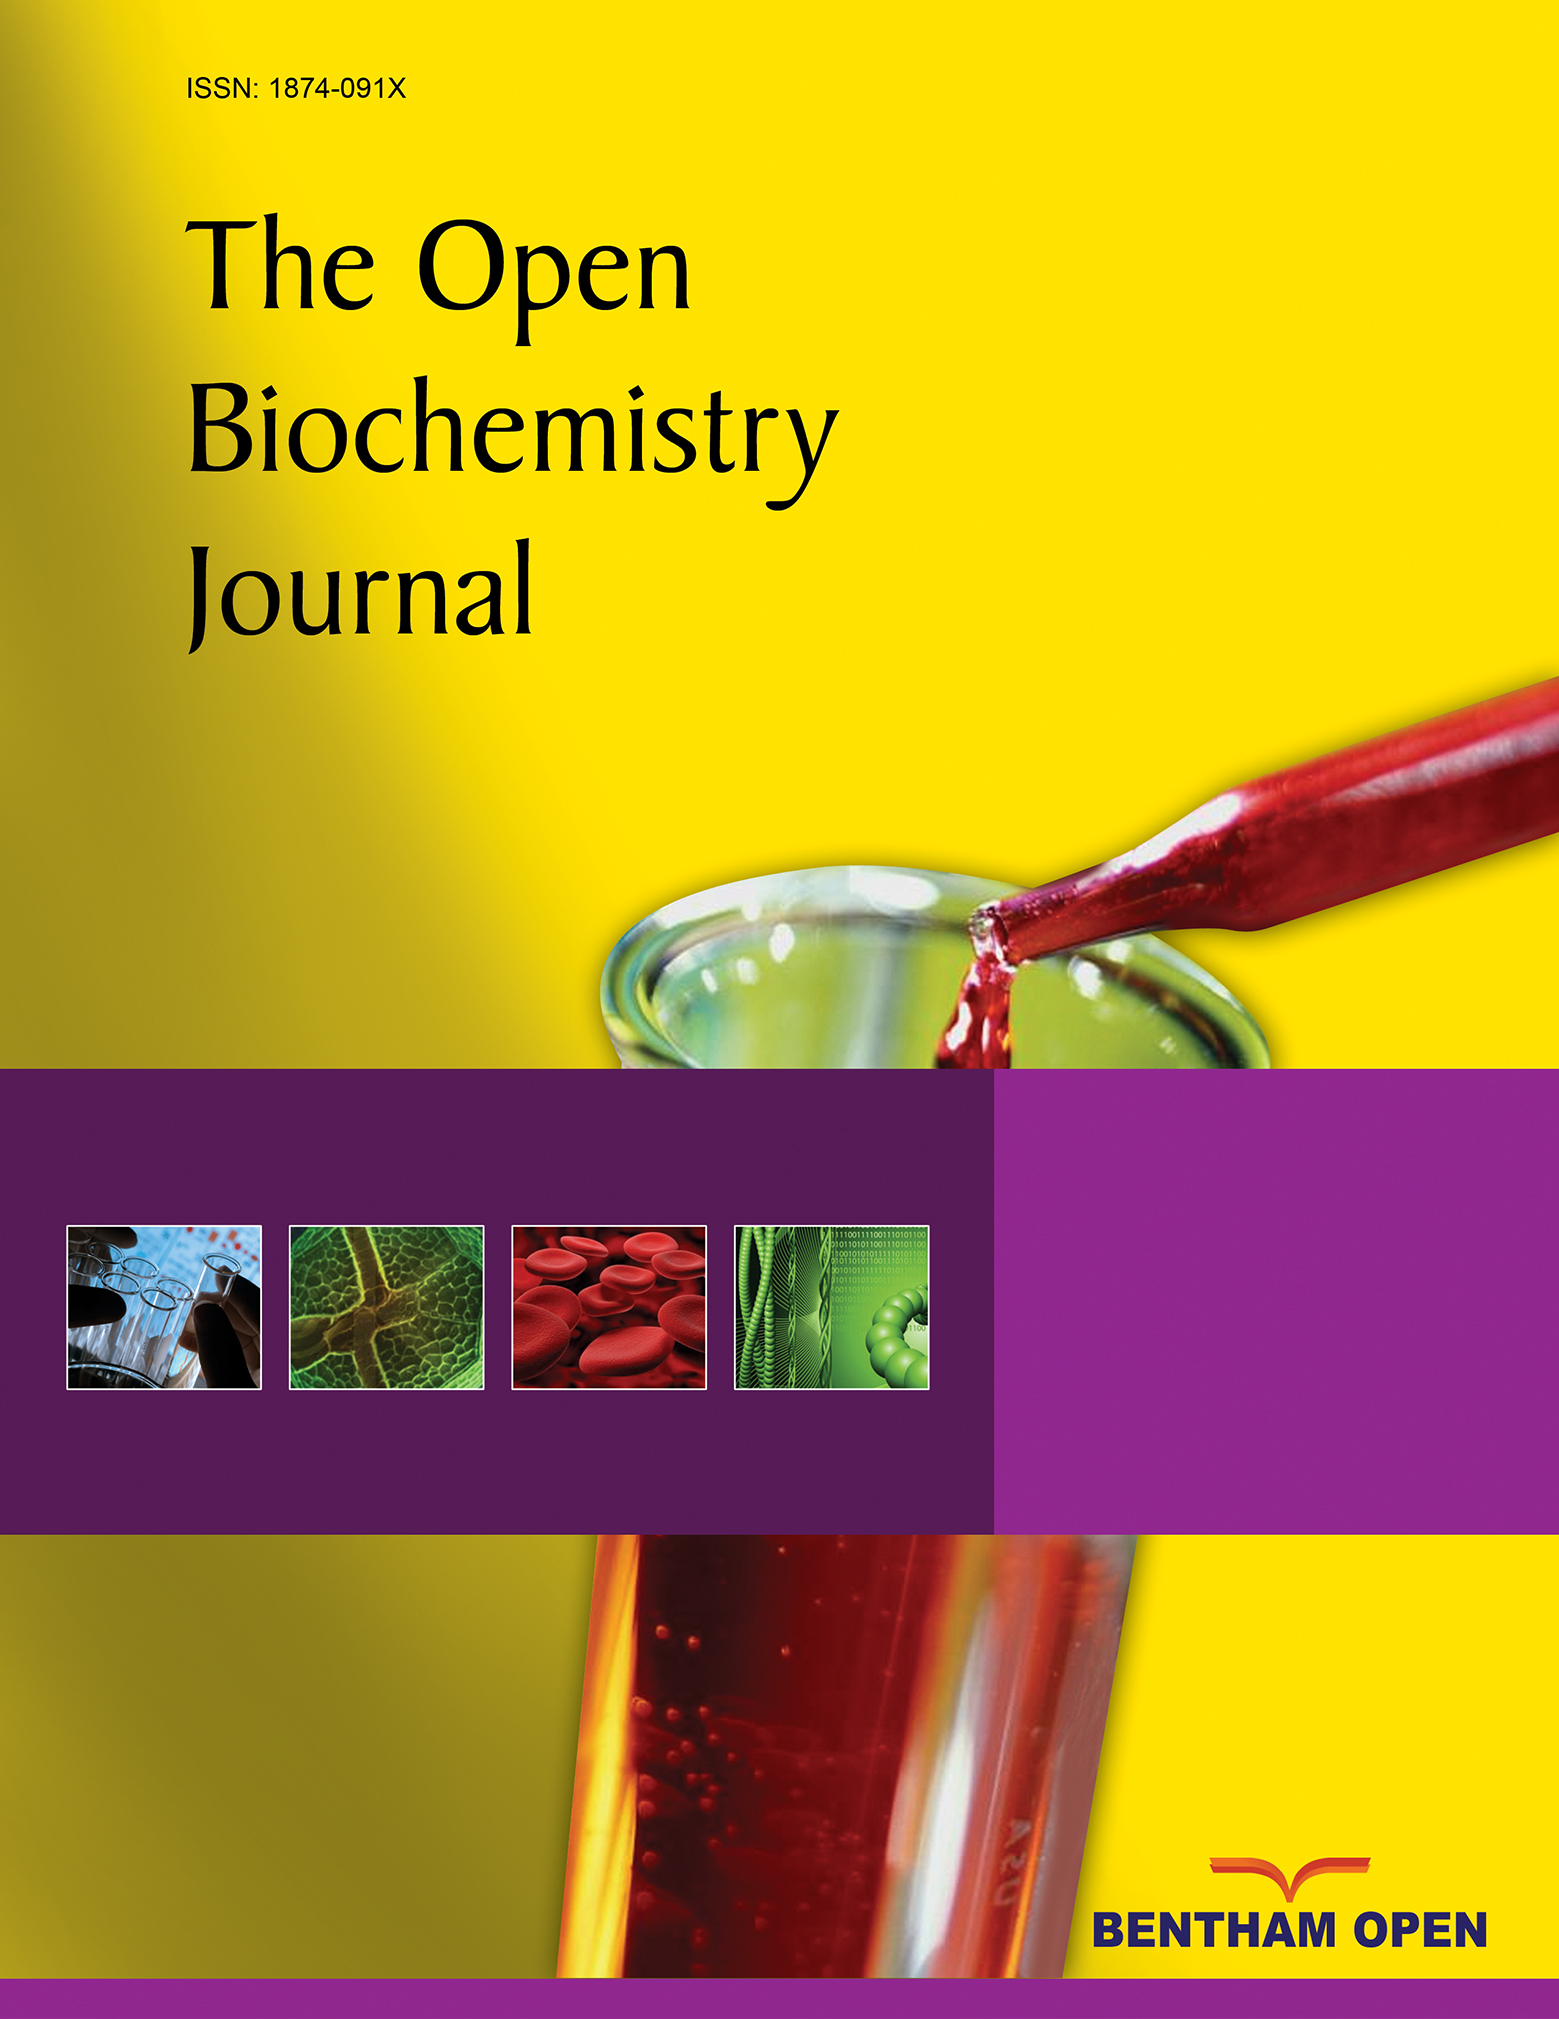 The Open Biochemistry Journal